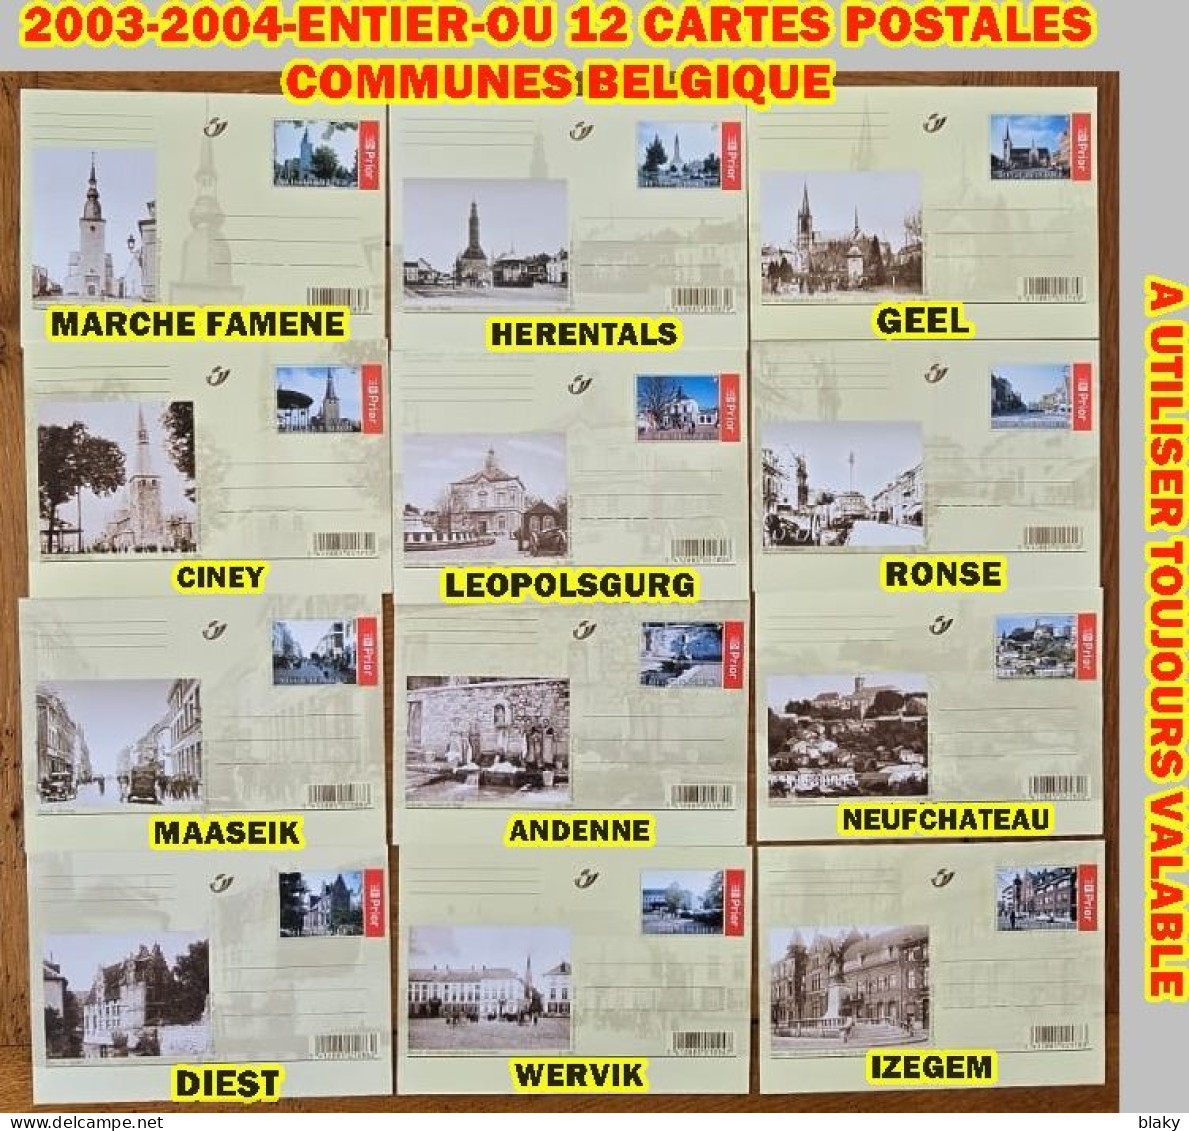 2003-2004-ENTIER-OU 12 CARTES POSTALES COMMUNES BELGES * IMPORTANT PRE TIMBREES - Cartes Postales Illustrées (1971-2014) [BK]